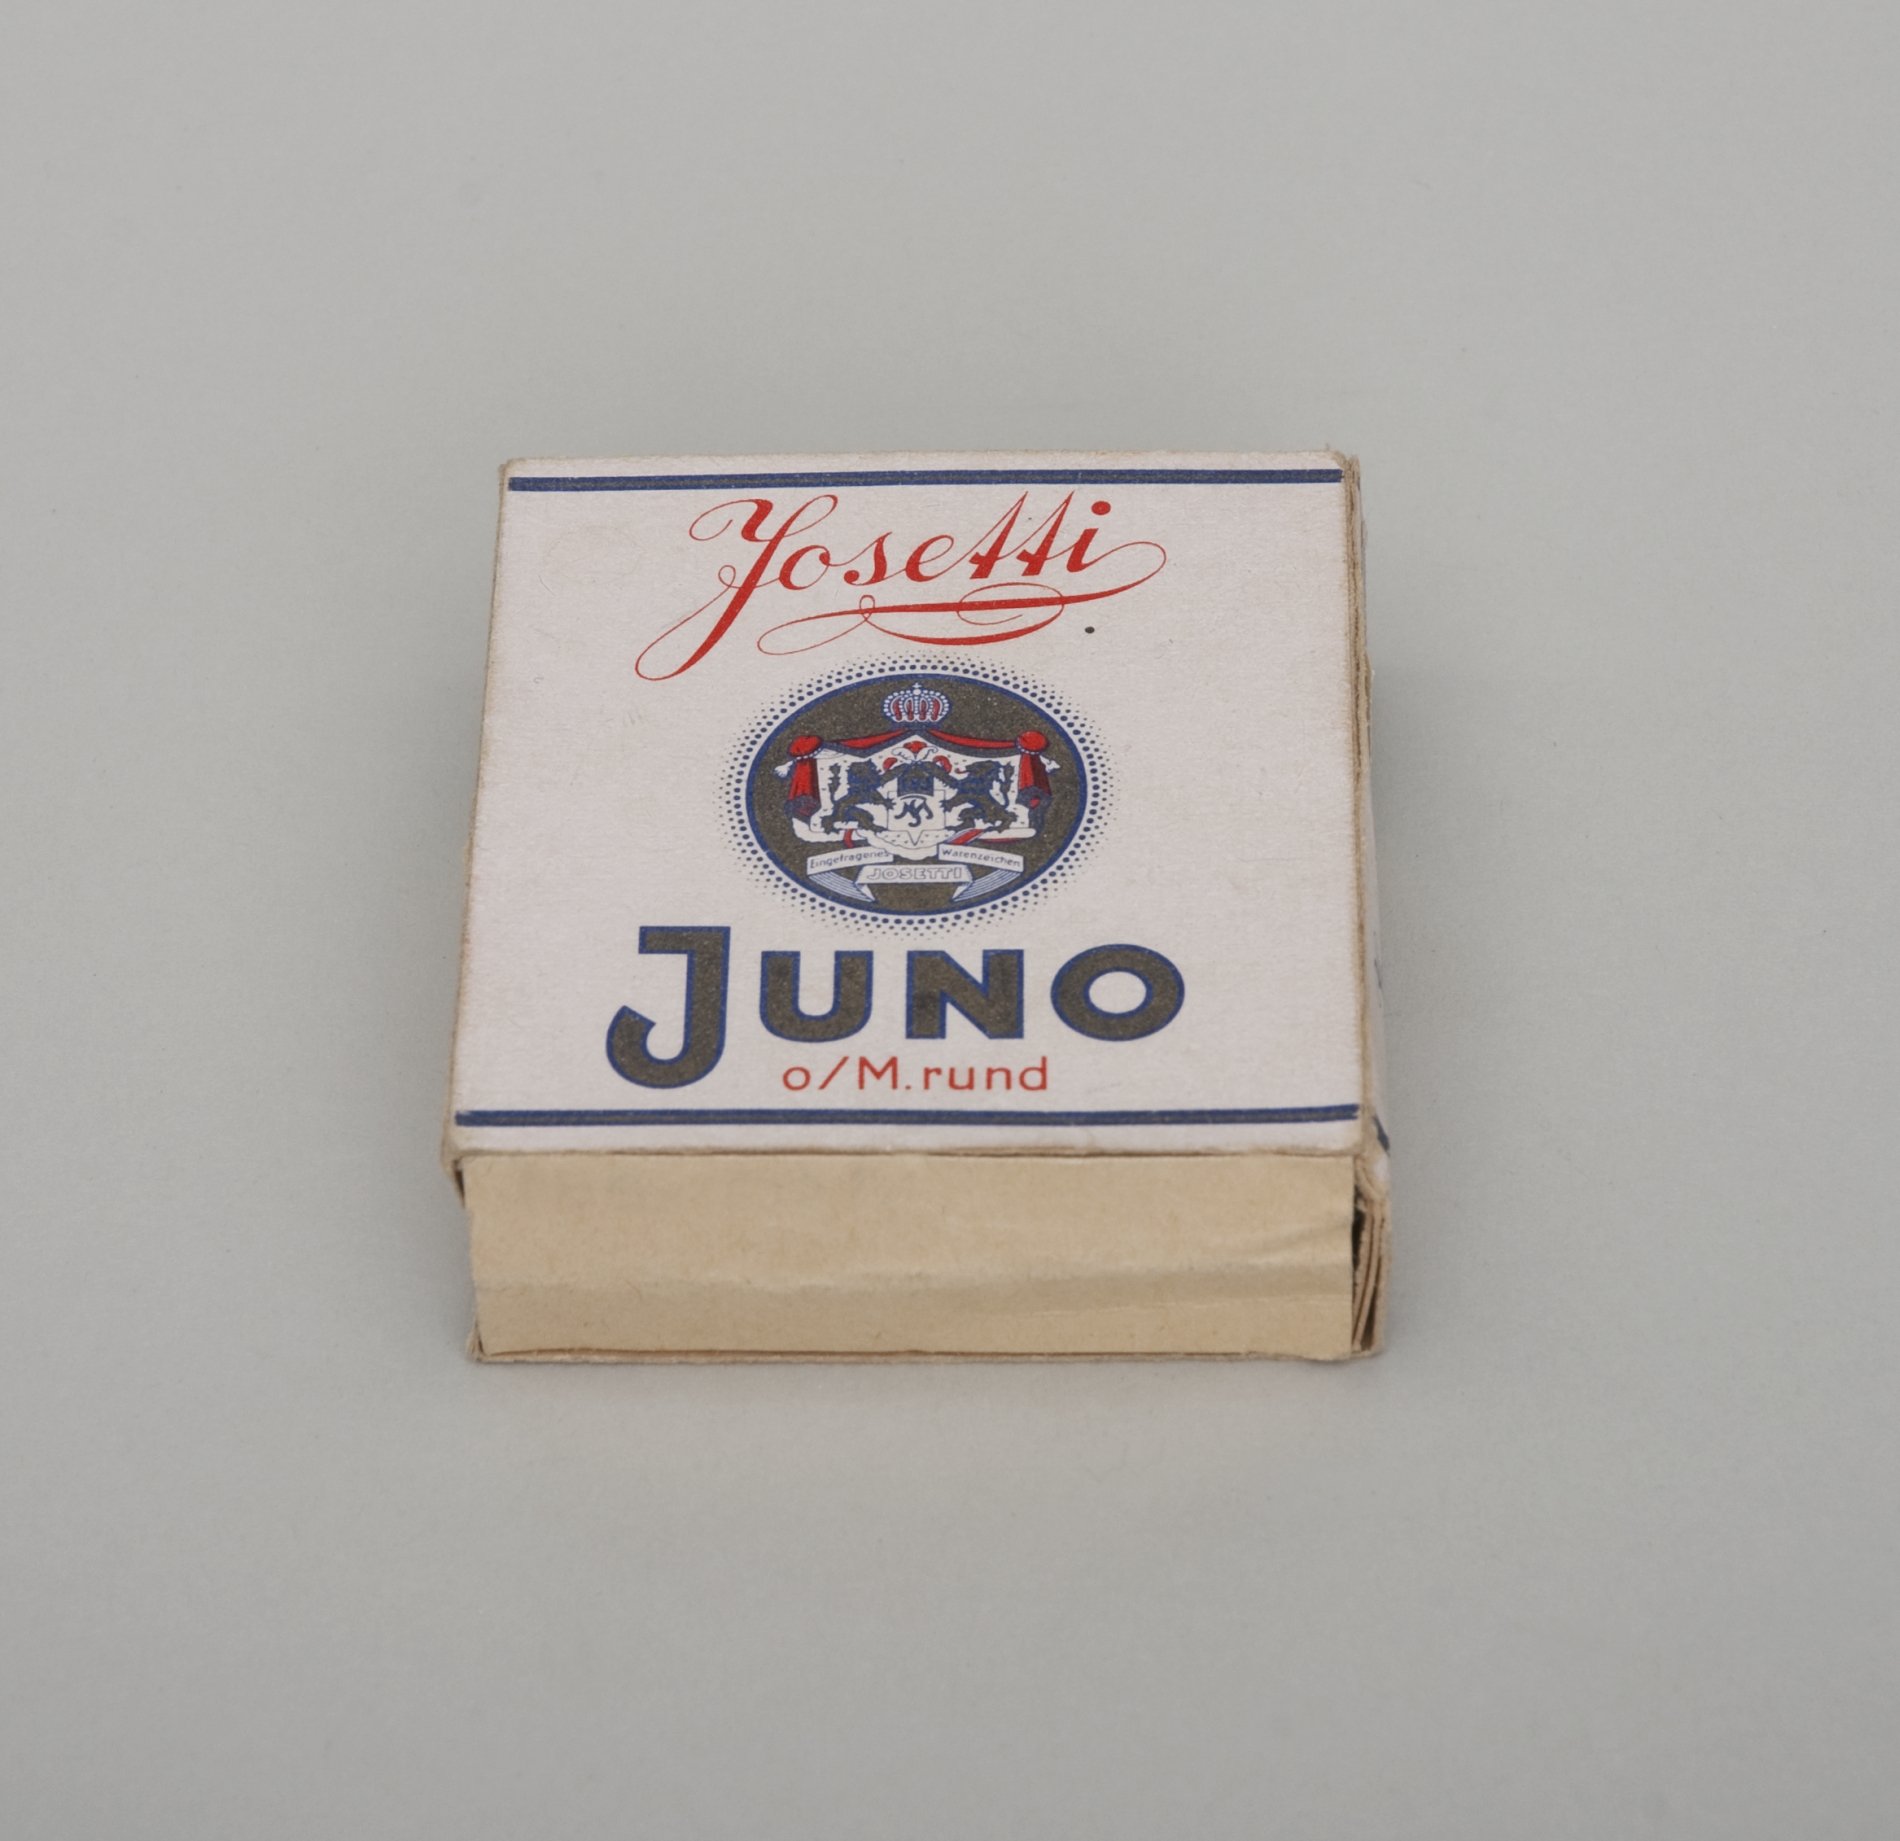 Packung "Juno Zigaretten" von "Josetti" (Stiftung Domäne Dahlem - Landgut und Museum, Weiternutzung nur mit Genehmigung des Museums CC BY-NC-SA)